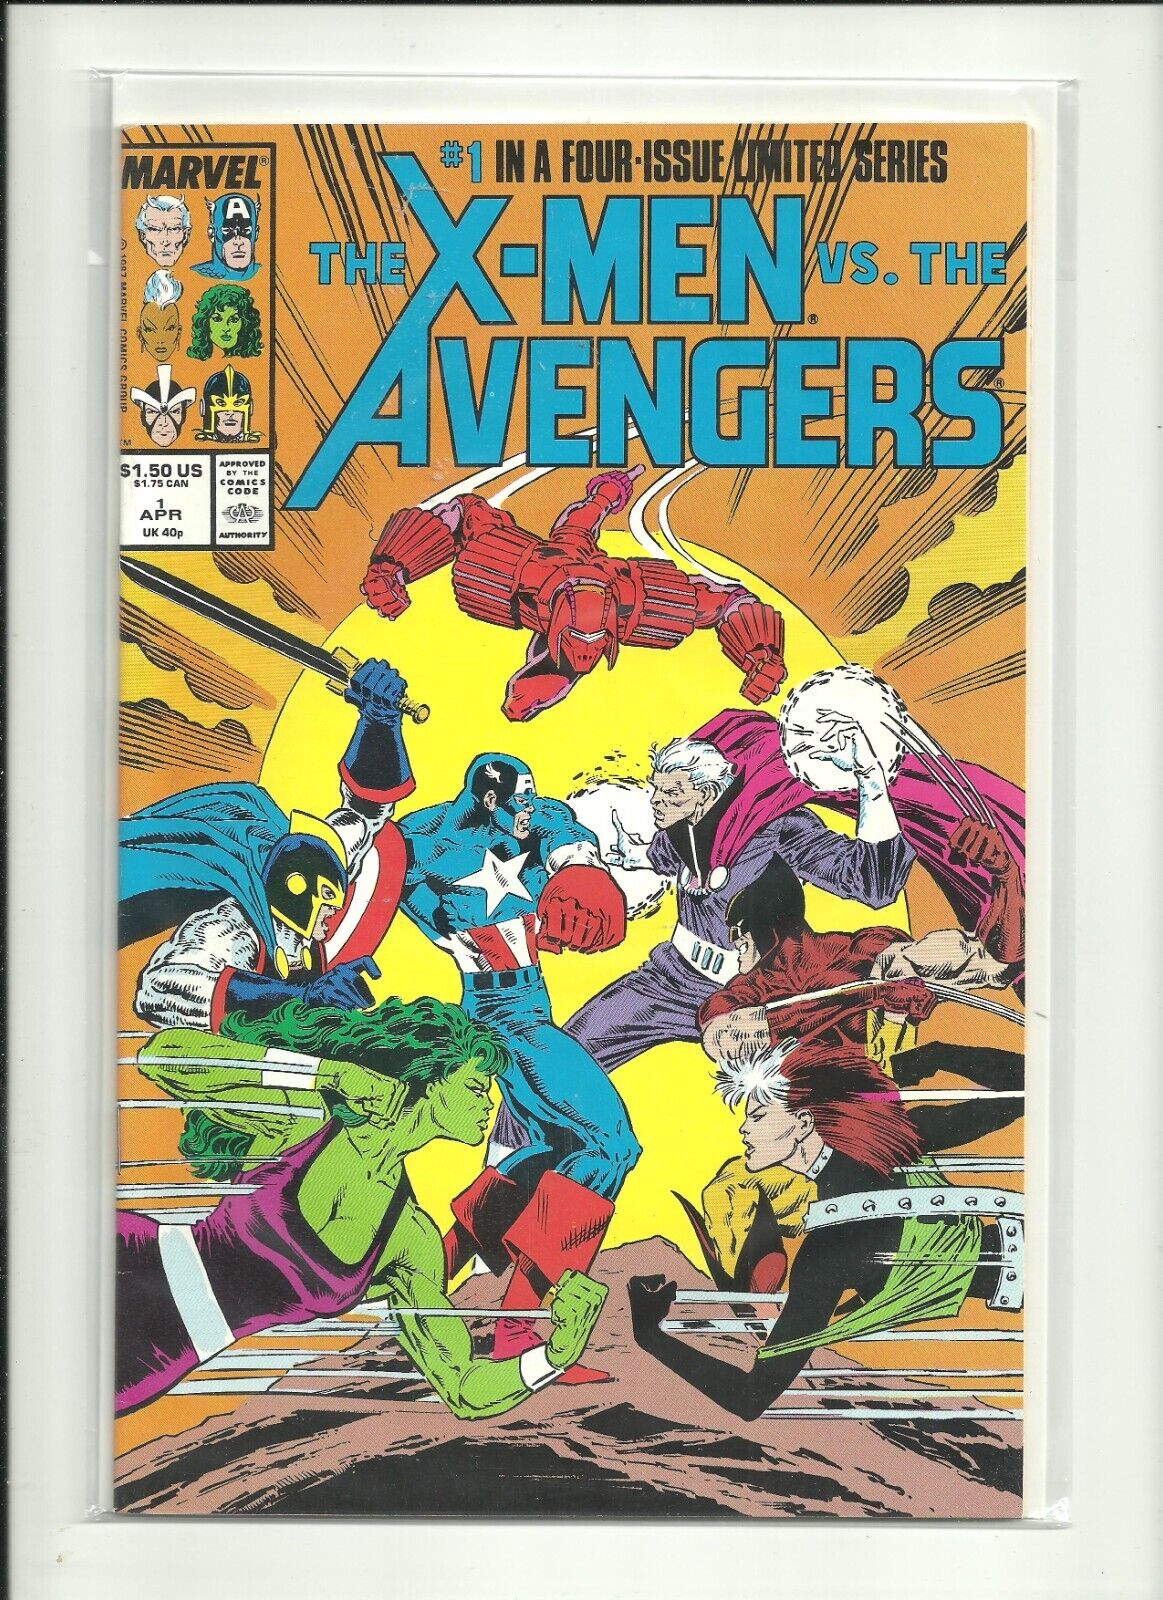 X-Men Versus The Avengers 1-4 NM $8.95 bin